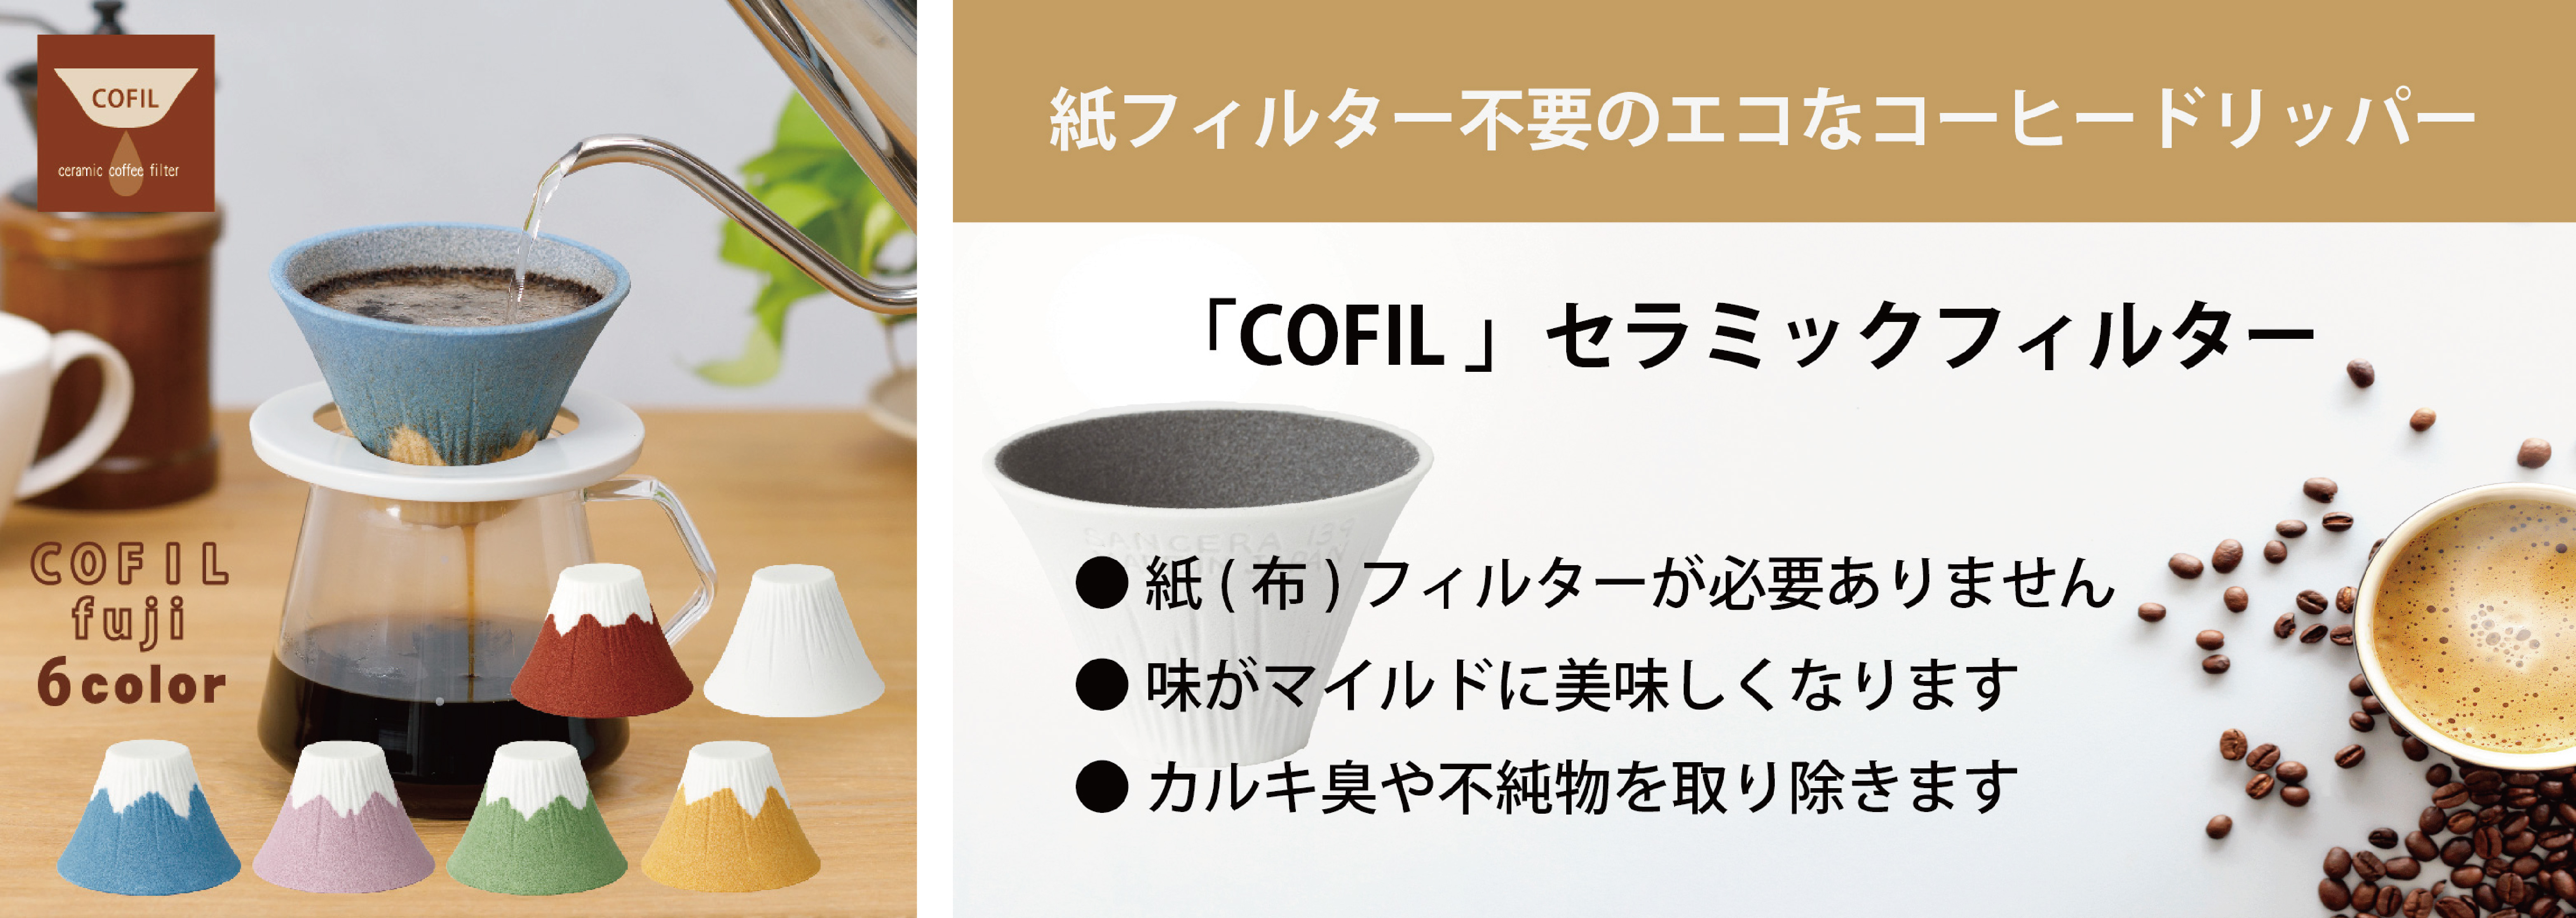 業界初 新しい技術で進化したカラーのセラミック コーヒー フィルター 今までになかった豊富なカラーと富士山の形を実現 有限会社 伊万里陶芸のプレスリリース